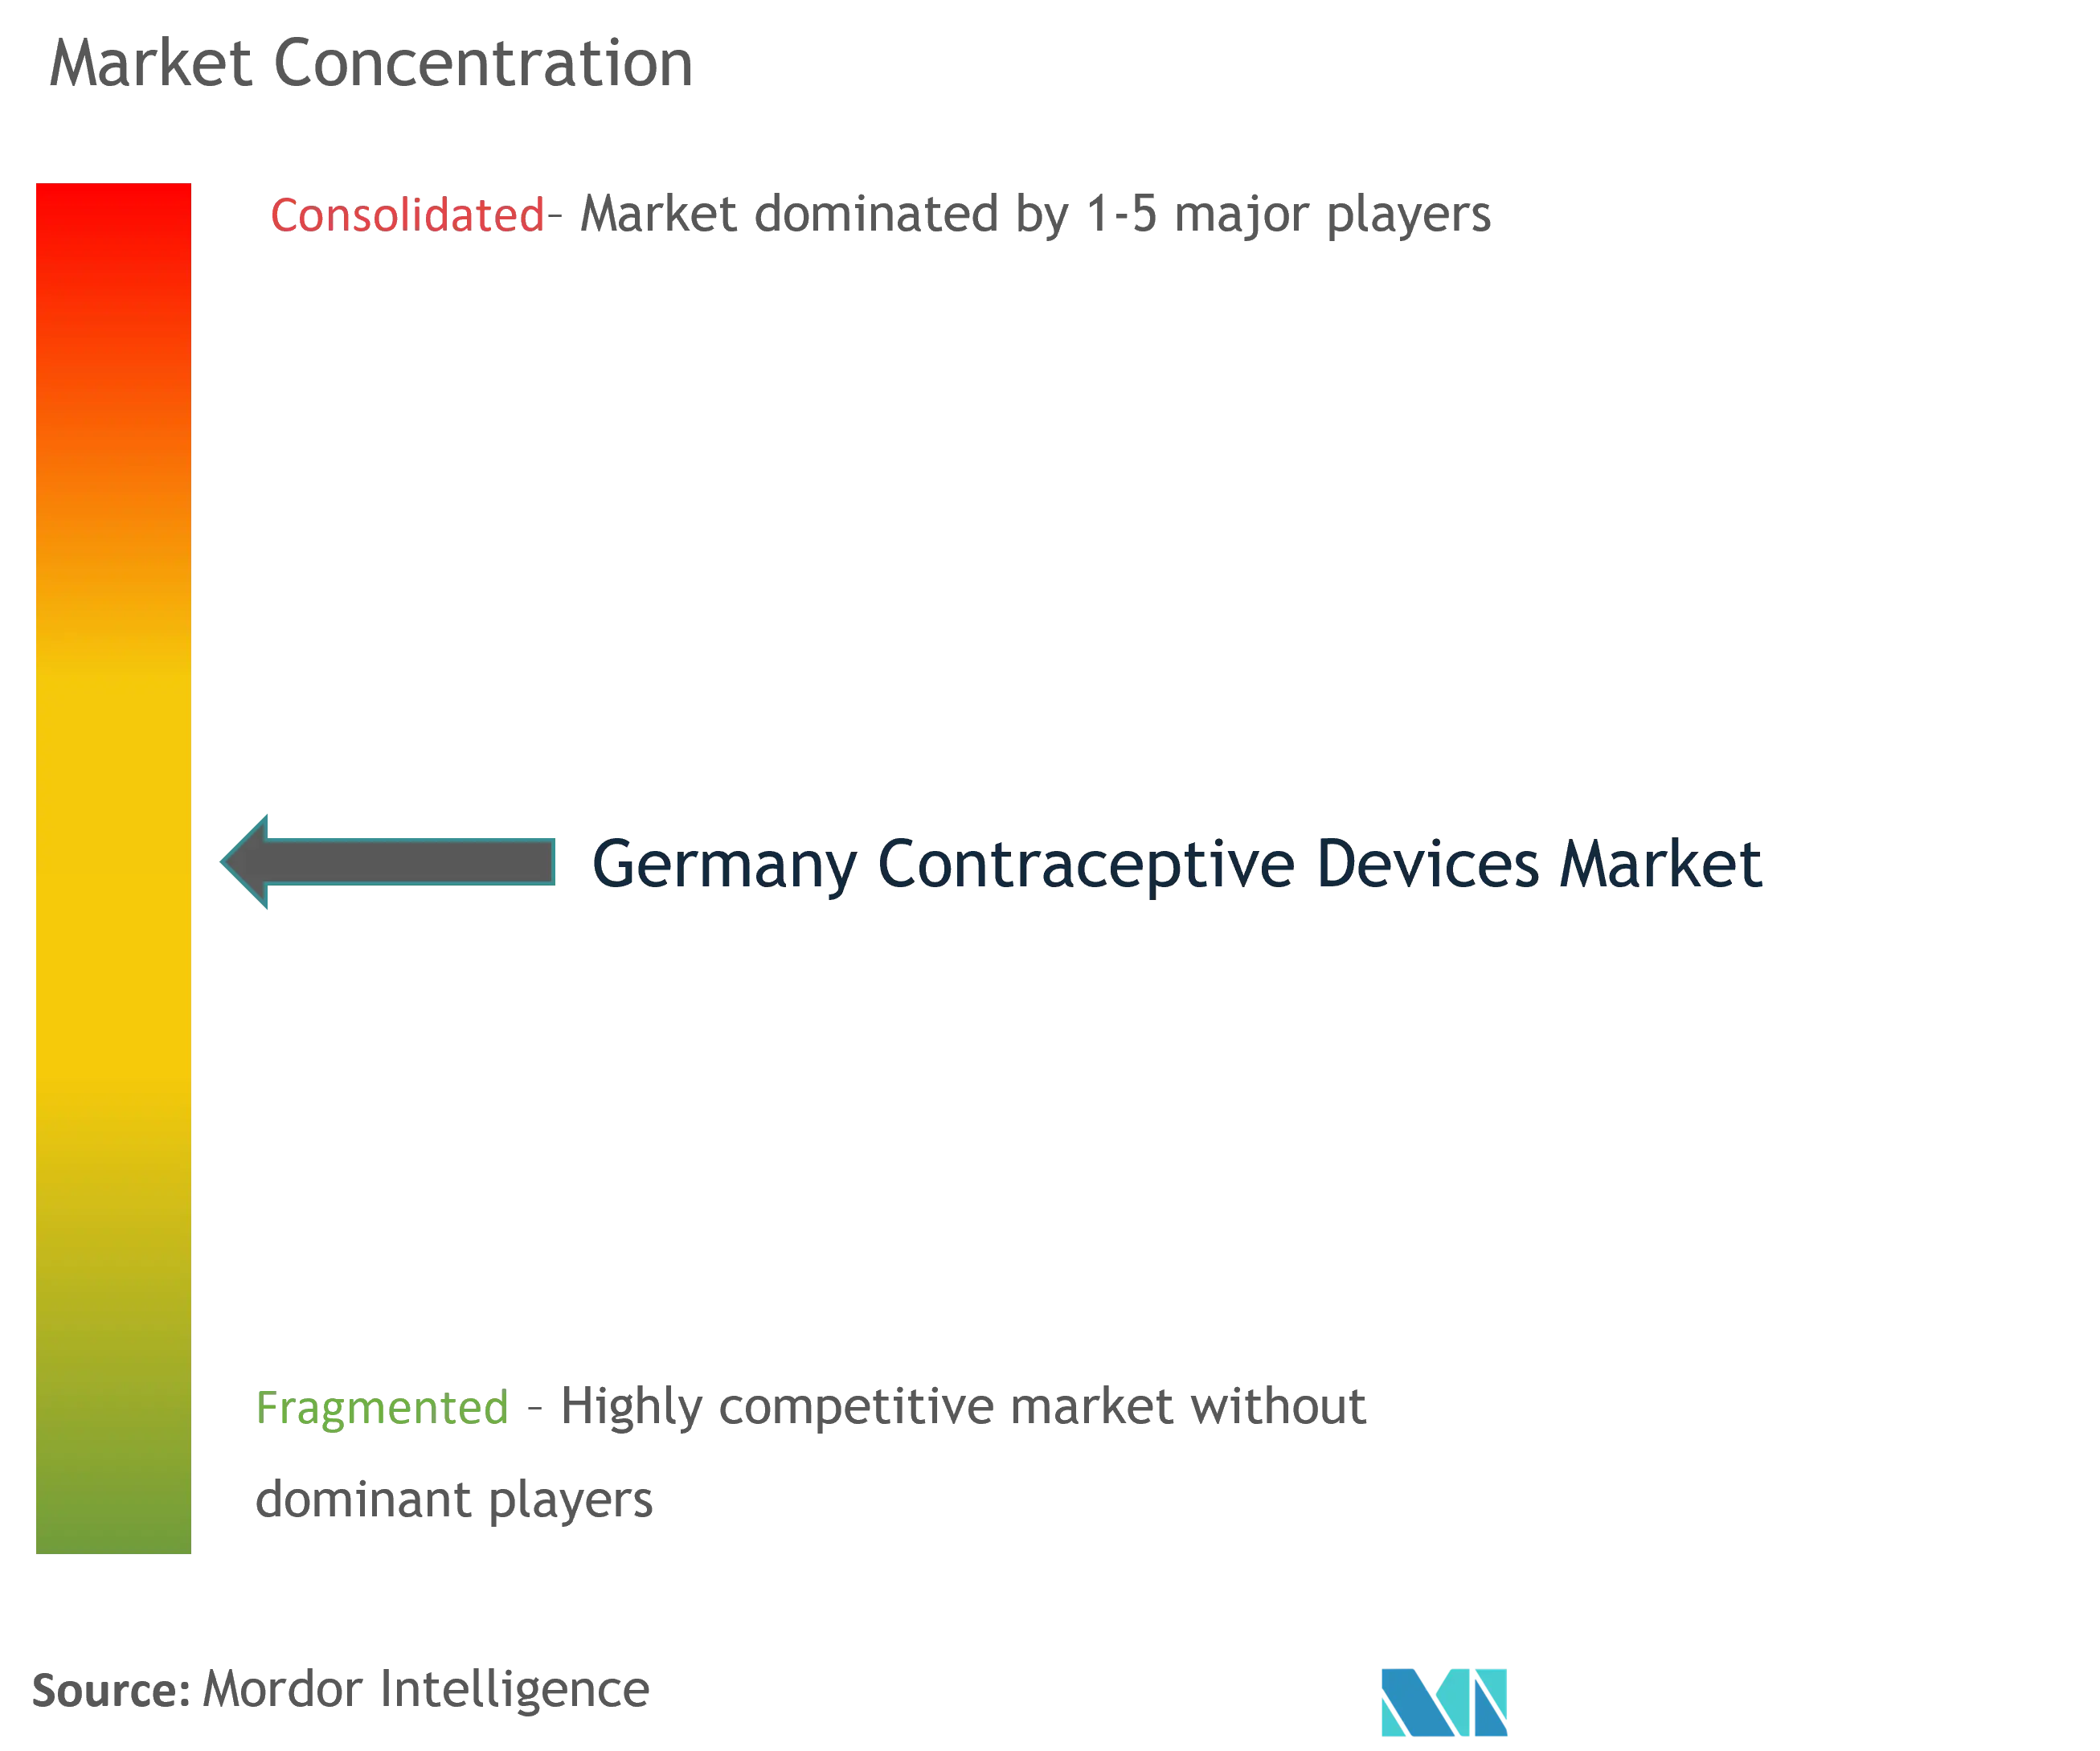 Marktkonzentration für Verhütungsmittel in Deutschland